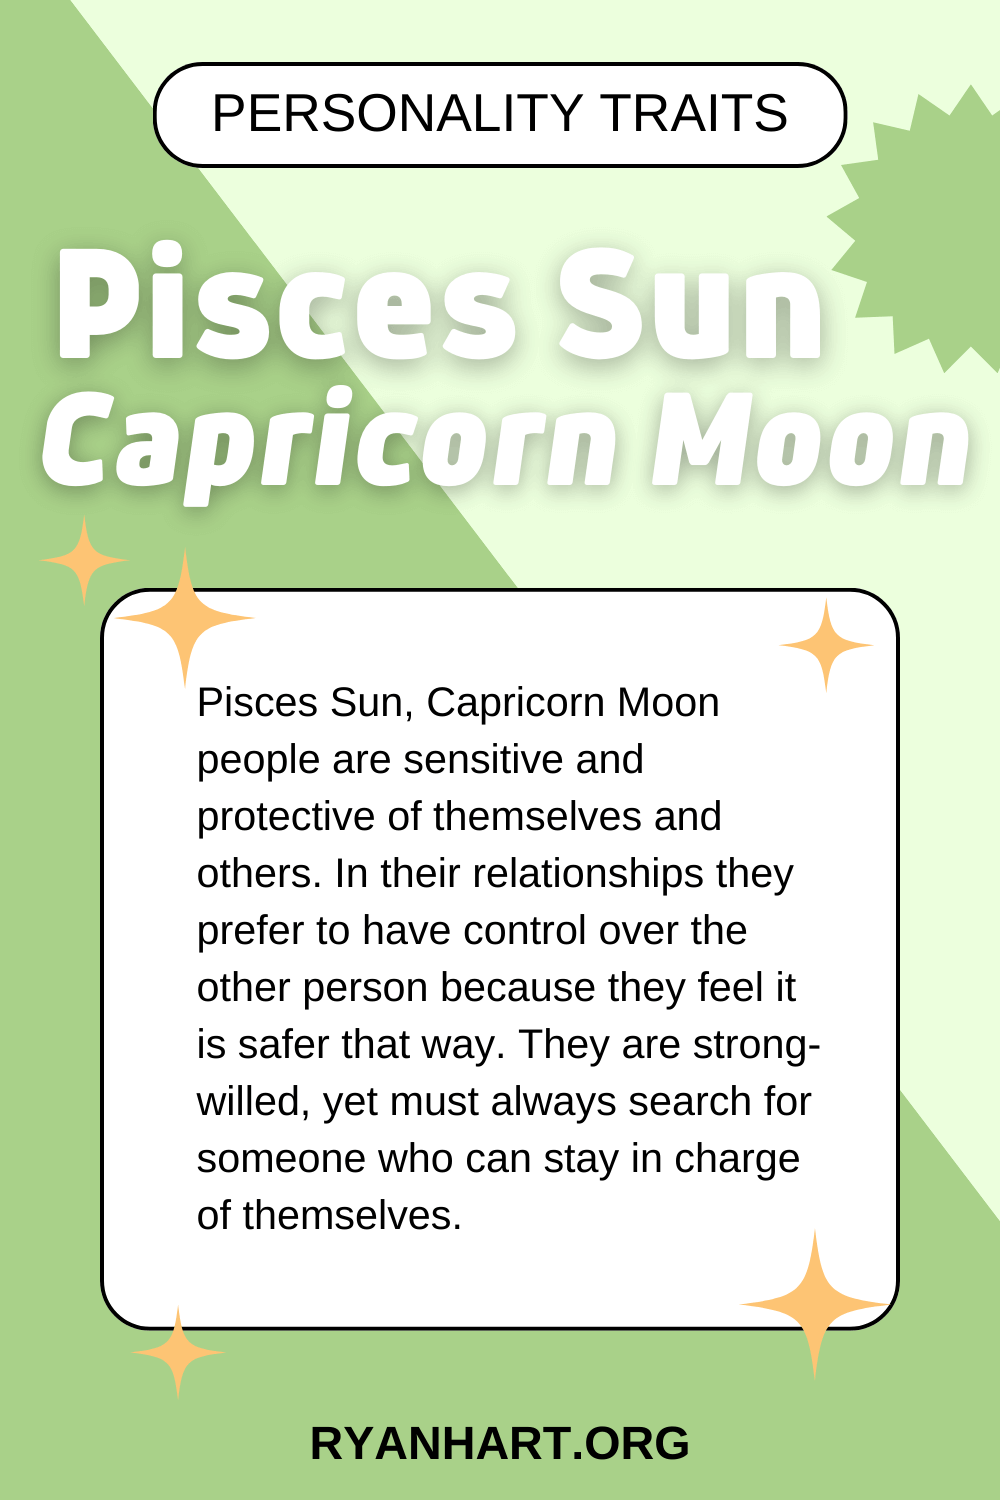 Pisces Sun Capricorn Moon Description